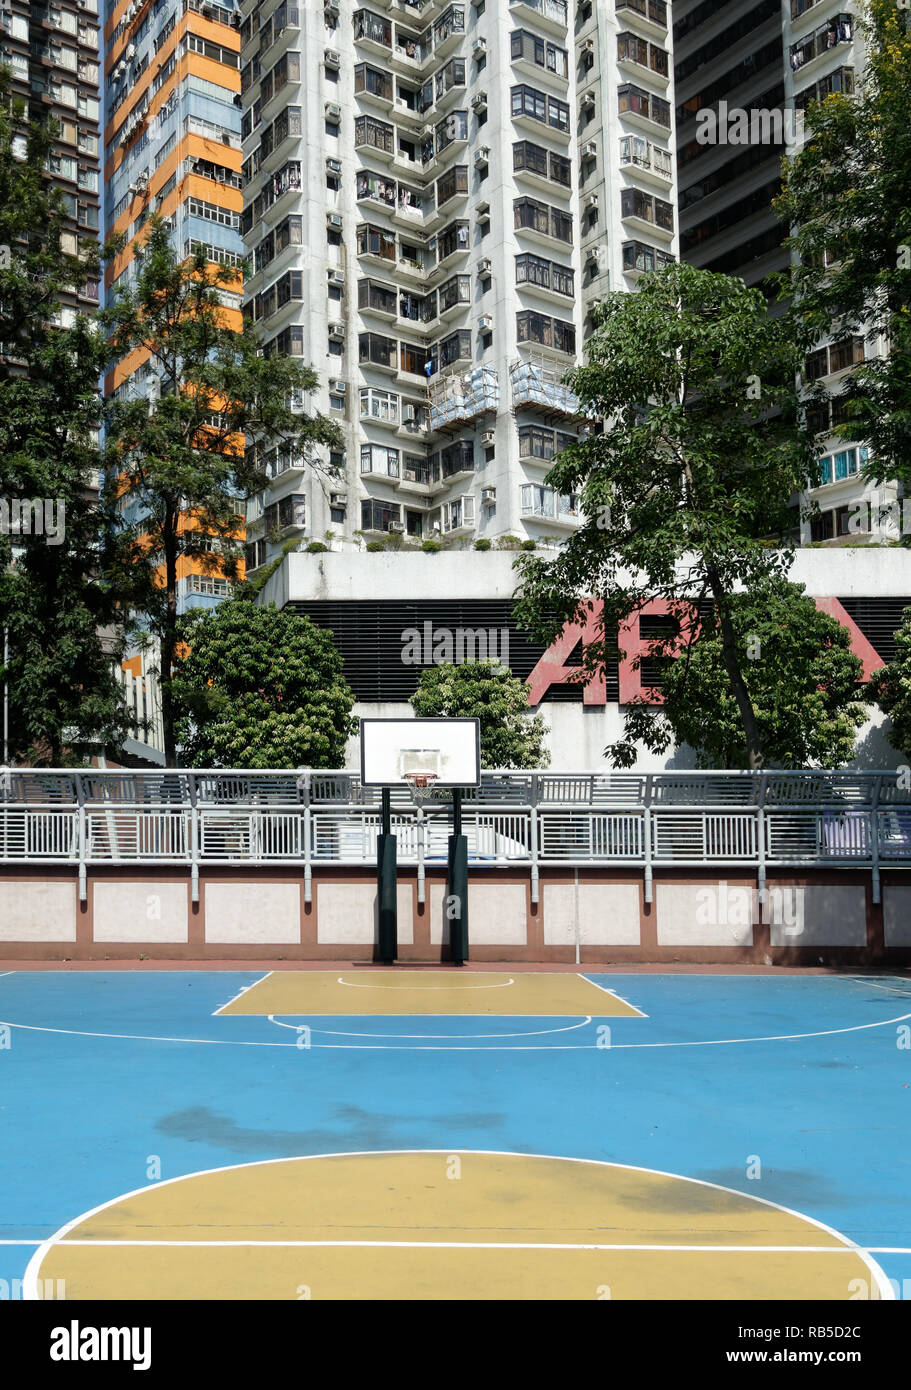 Basketball in Hong Kong in einem Hinterhof in blau und gelben farben Stock Photo